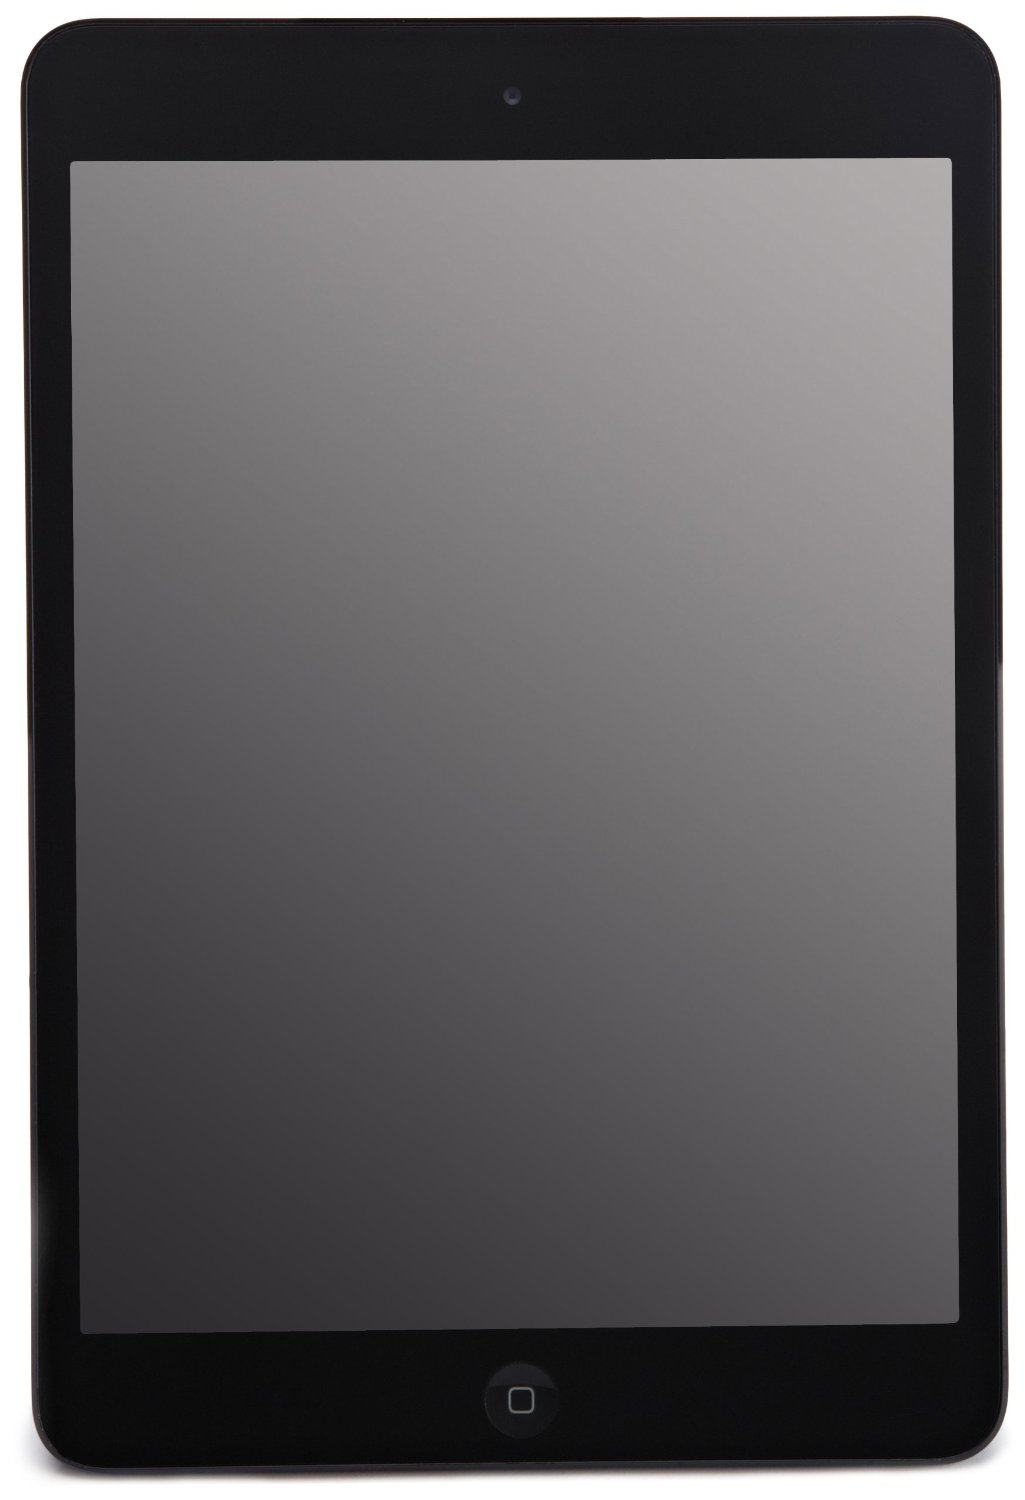 Apple iPad Mini MD530LL A 7.9 inch 64GB Wi-Fi Black Review